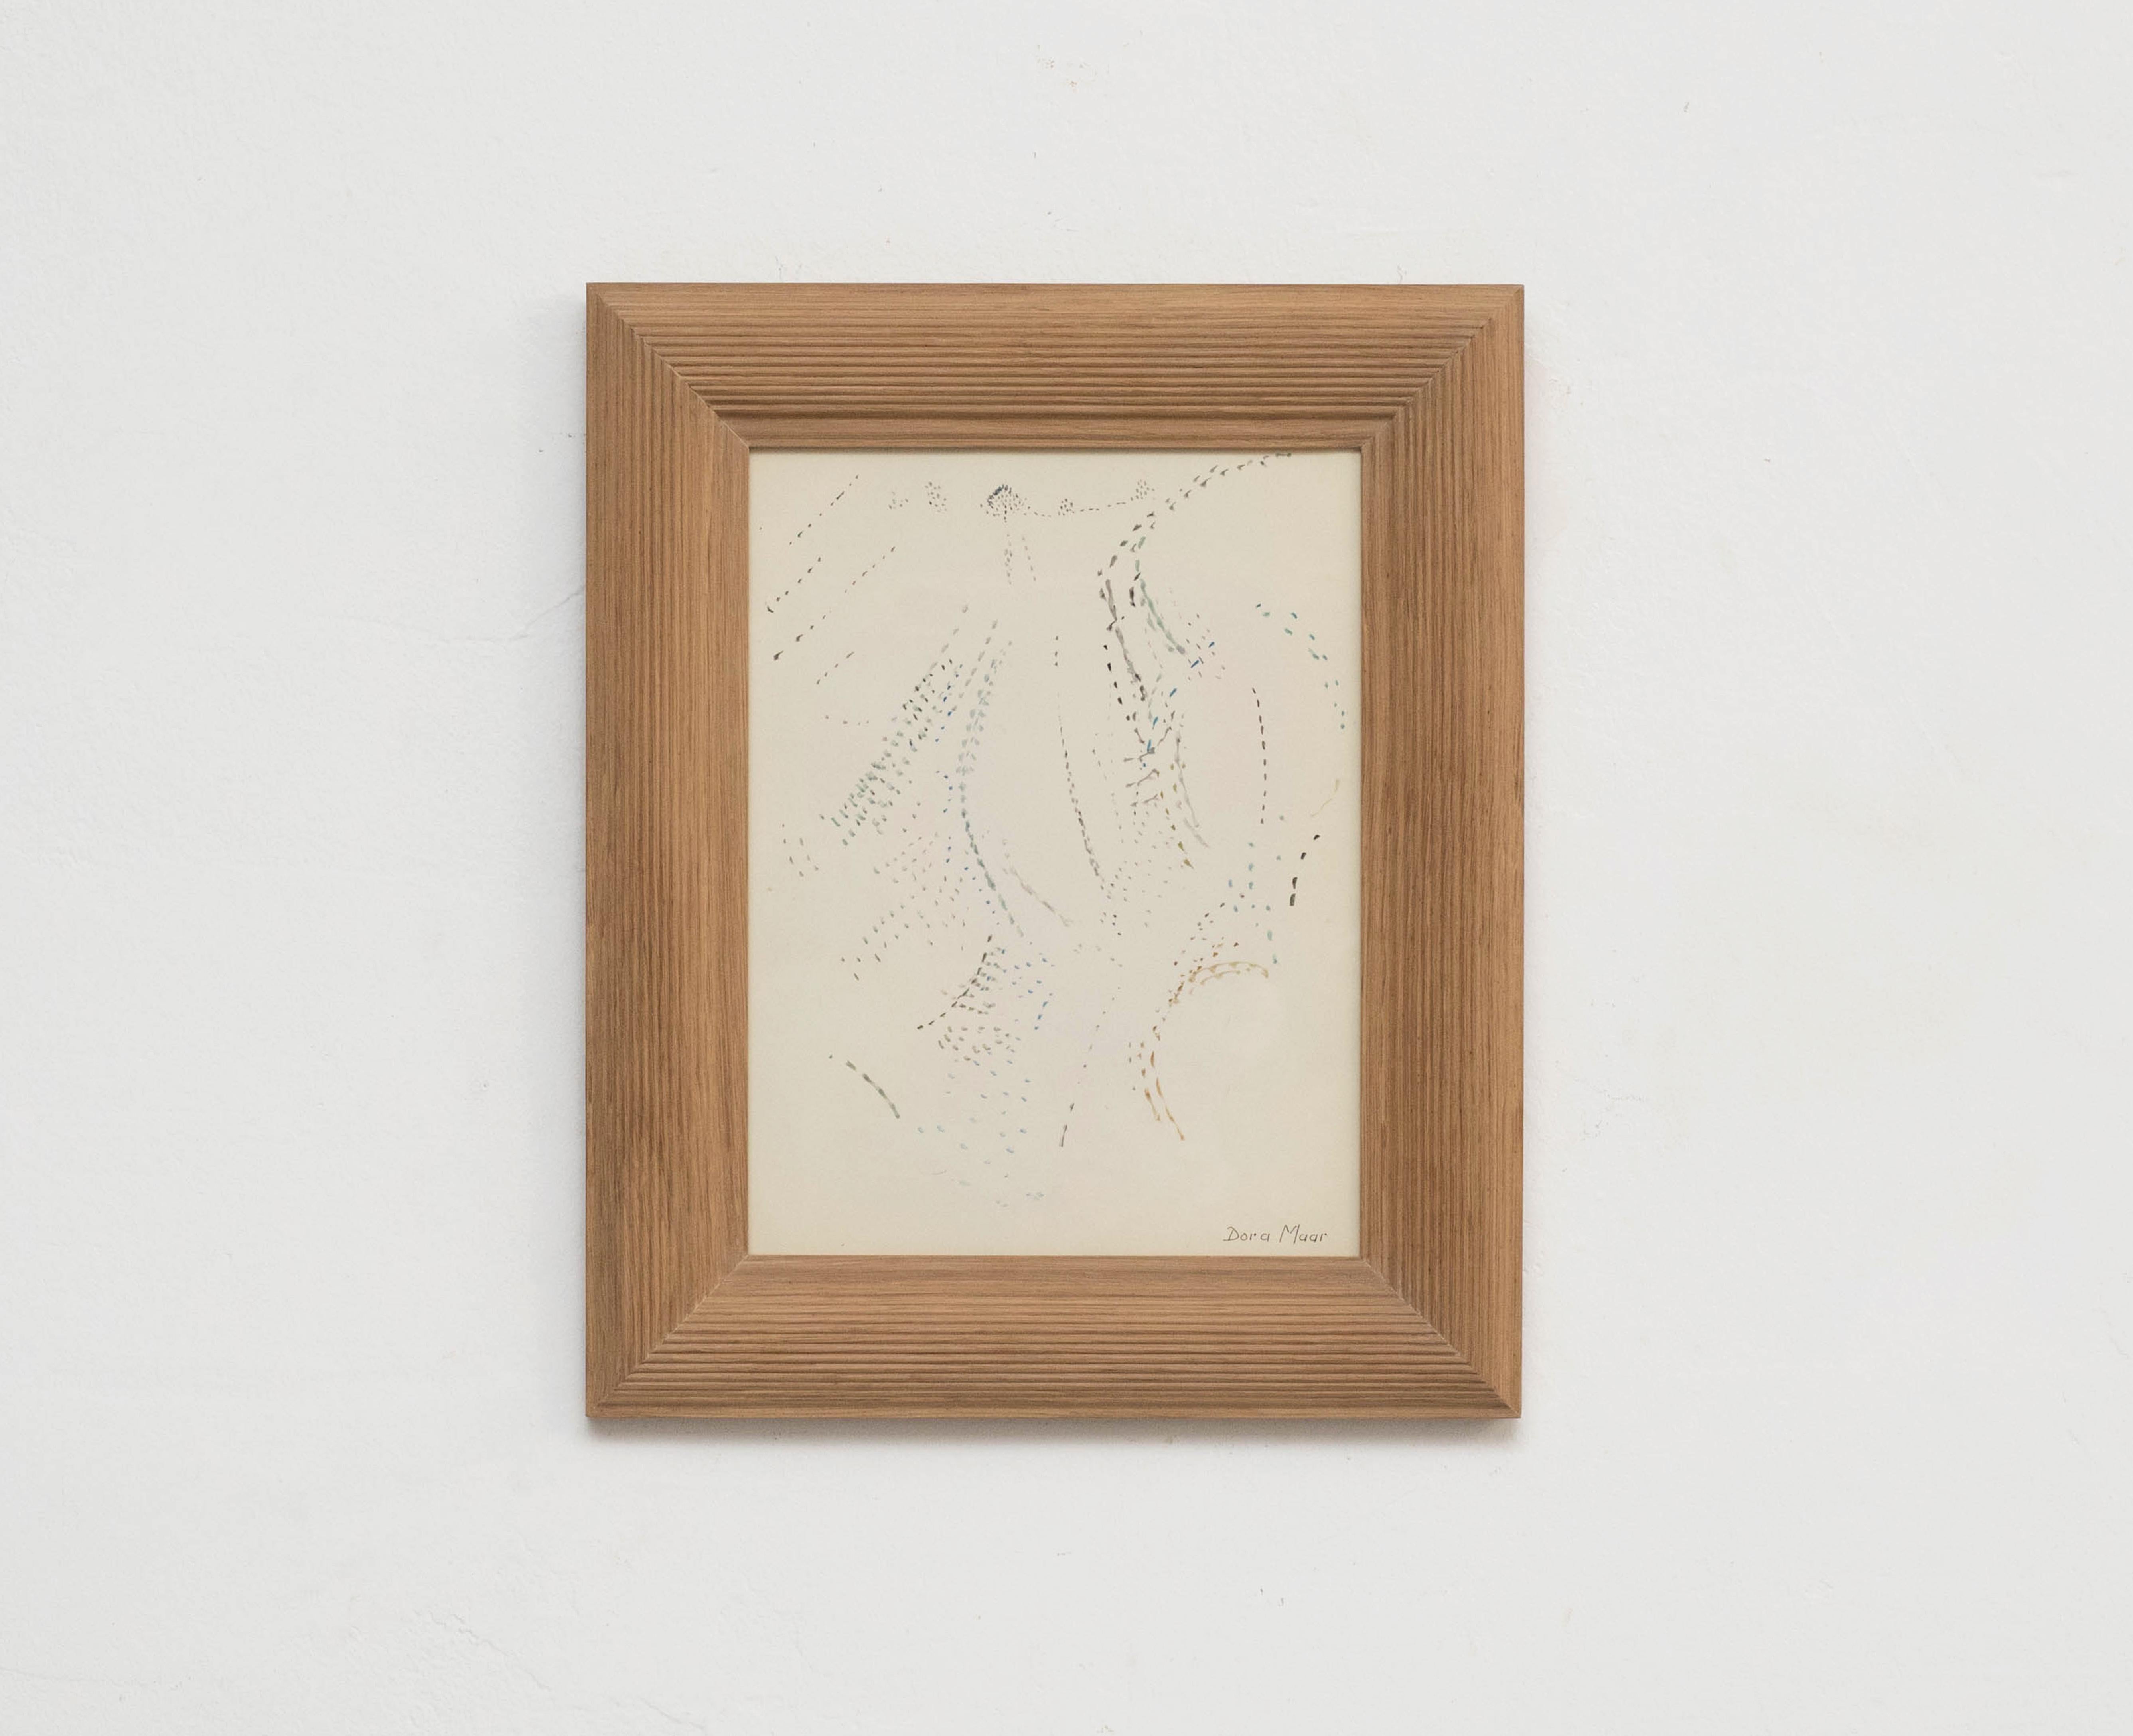 Pointillistische Komposition von Dora Maar.

Echtheitsstempel der Auktion, die 1998 in Paris stattfand.
Zweite Zeichnung auf der Rückseite.
20. Jahrhundert, undatiert.

In gutem Originalzustand mit geringen alters- und gebrauchsbedingten